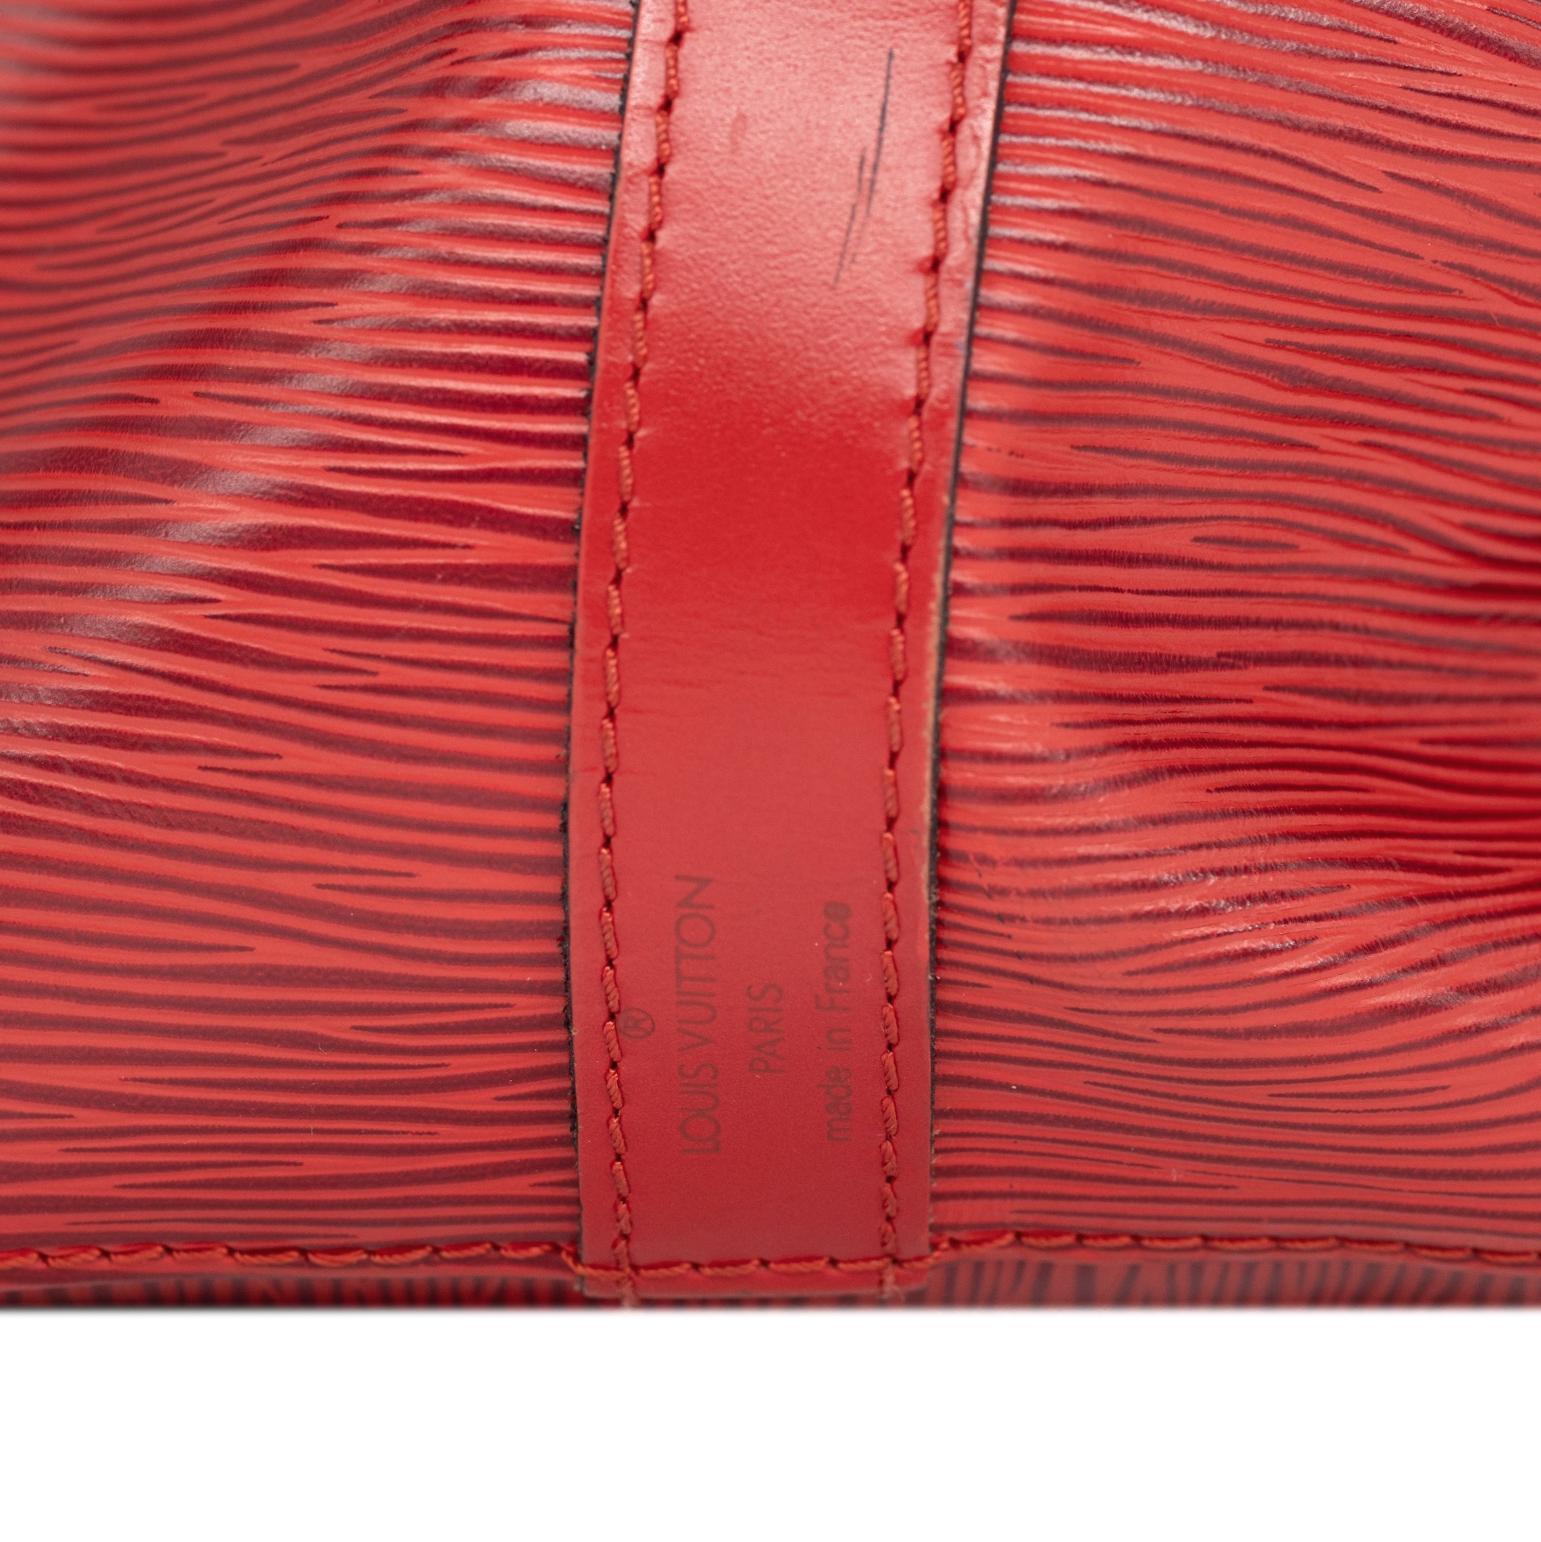 Louis Vuitton “Noe” PM Bucket Bag in Red EPI Leather Shoulder Bag, France 1993. 6